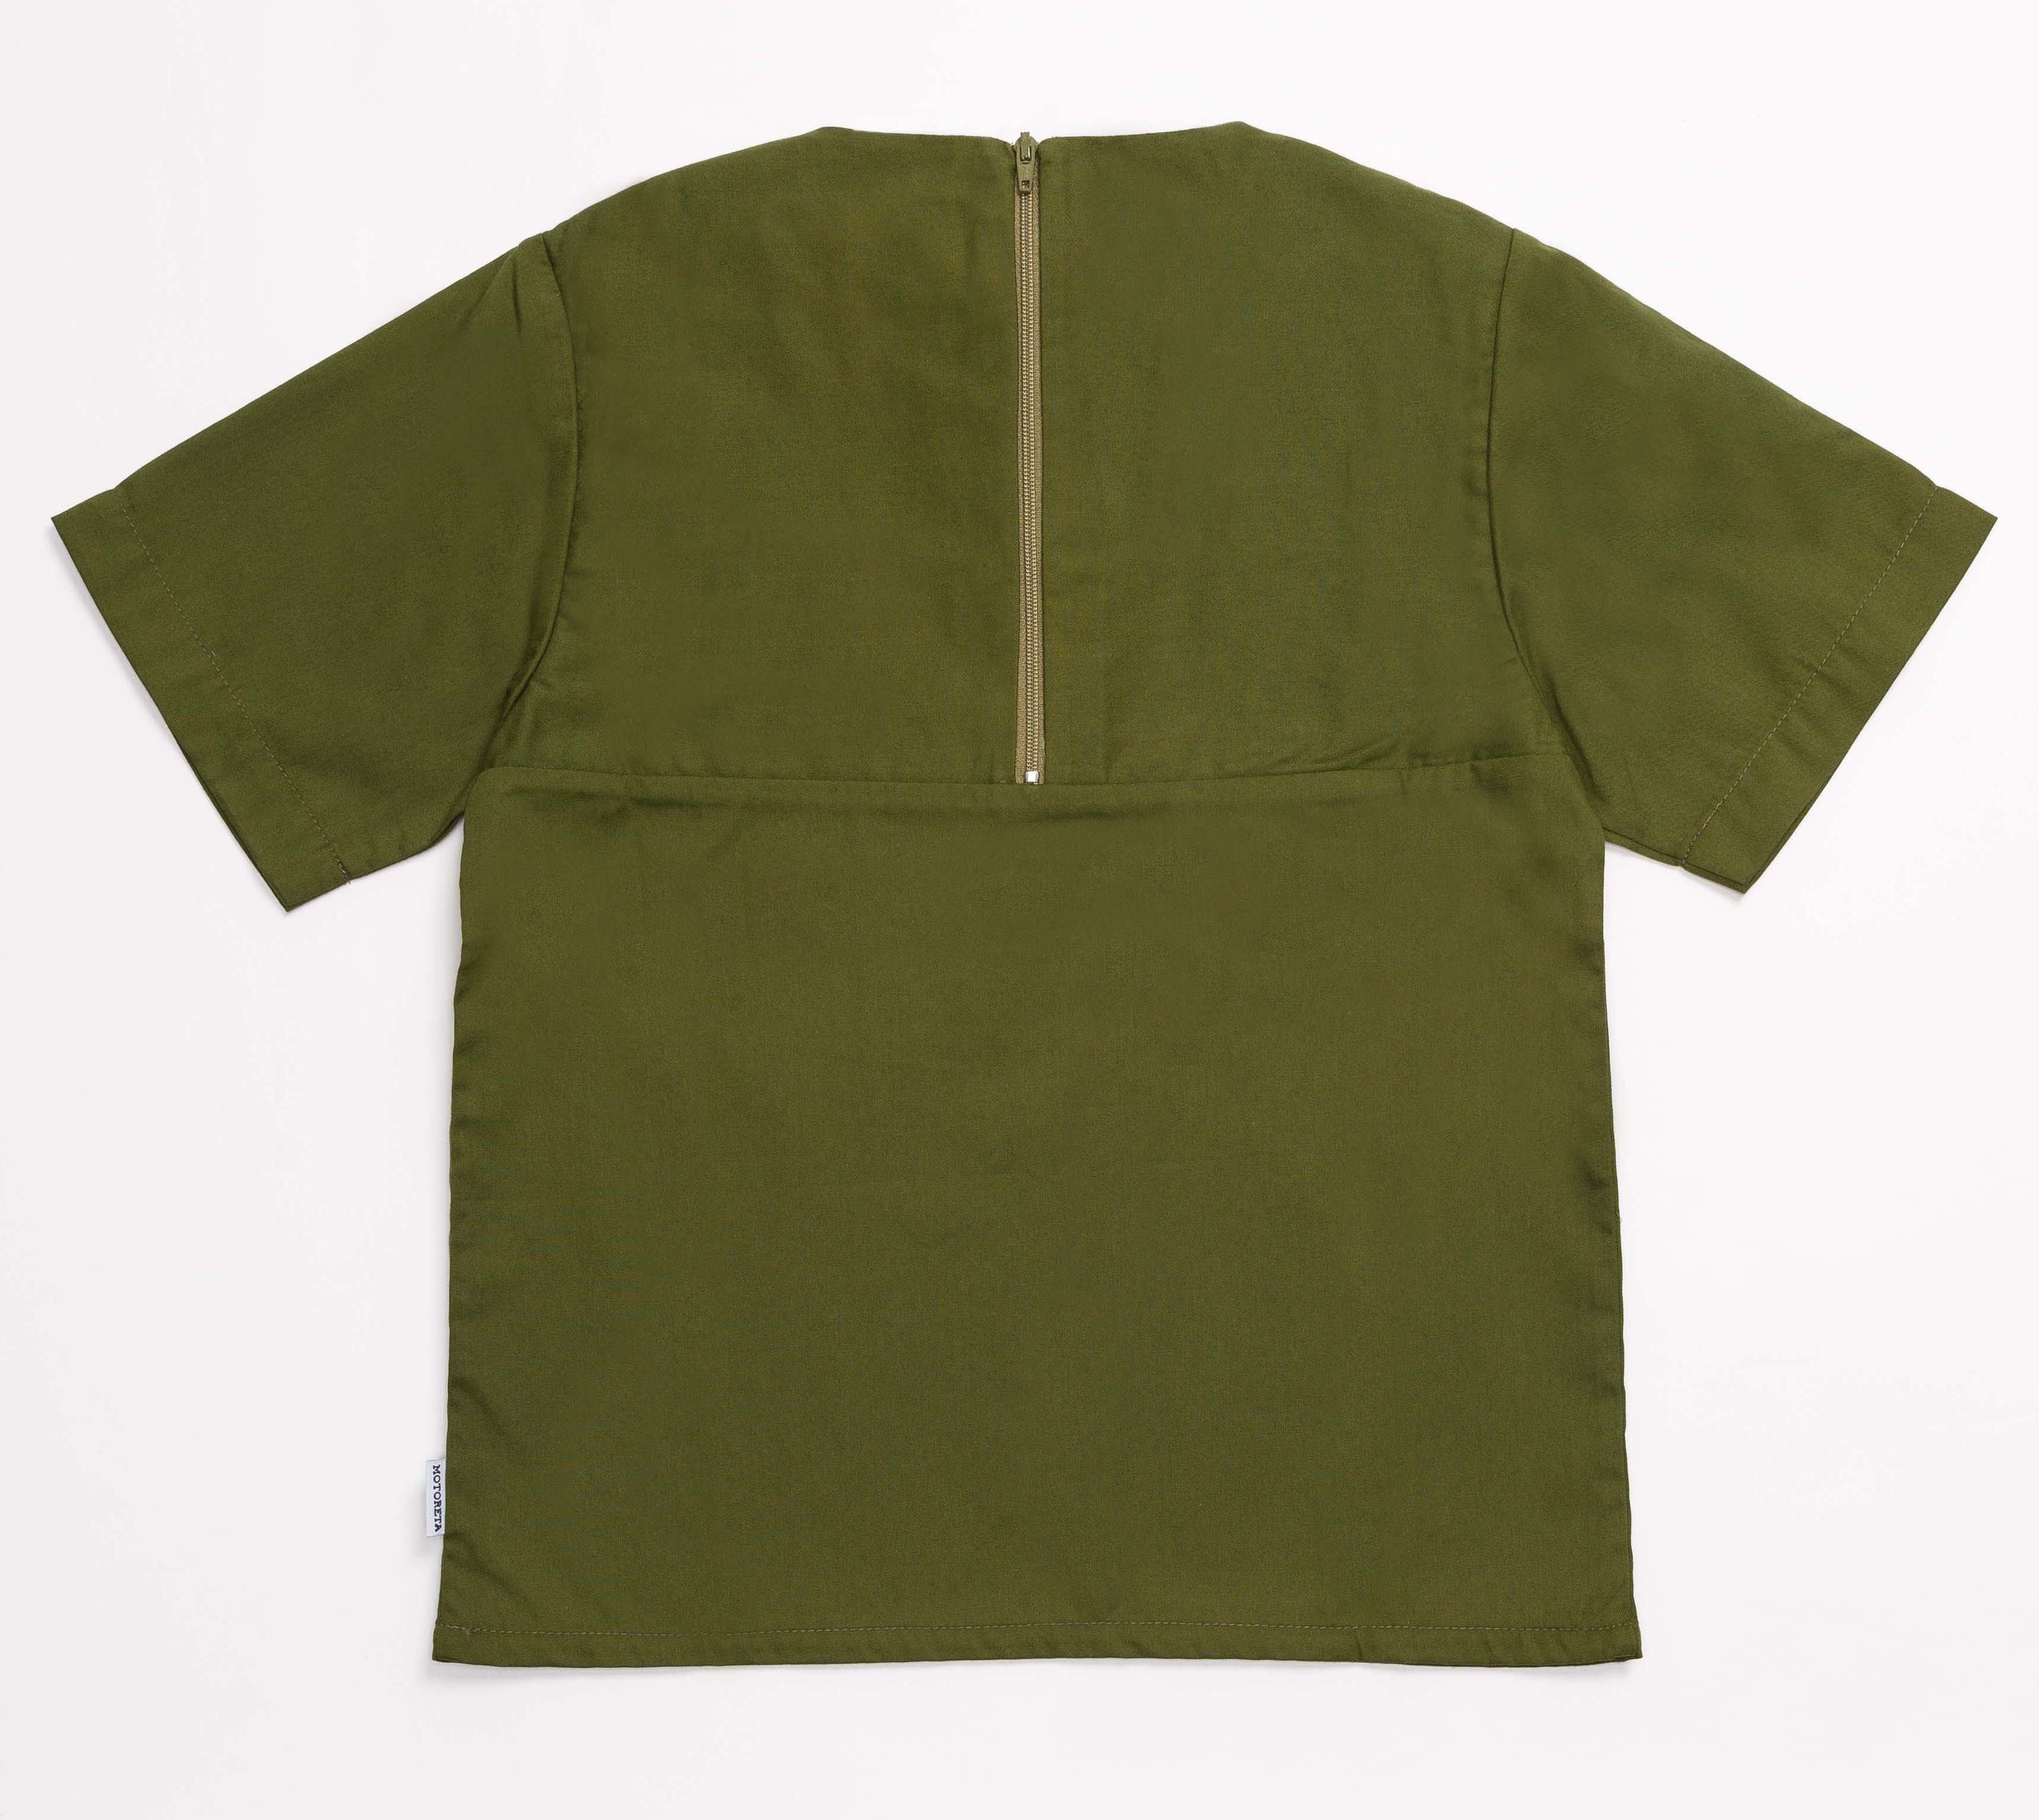                                                                                                                                              Tarifa Shirt - Green